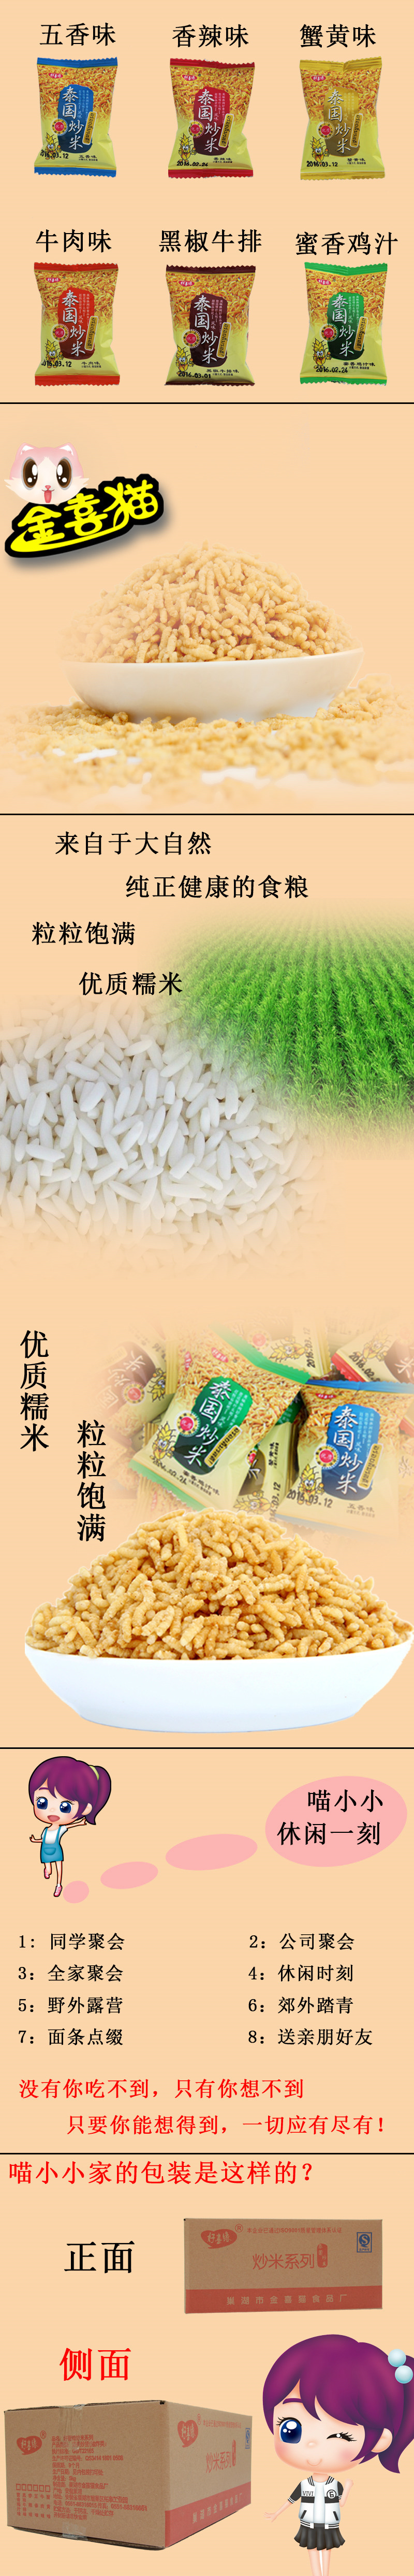 安徽特产 泰国炒米 香脆可口 优质糯米 炒货类休闲小零食 独立小包装500g